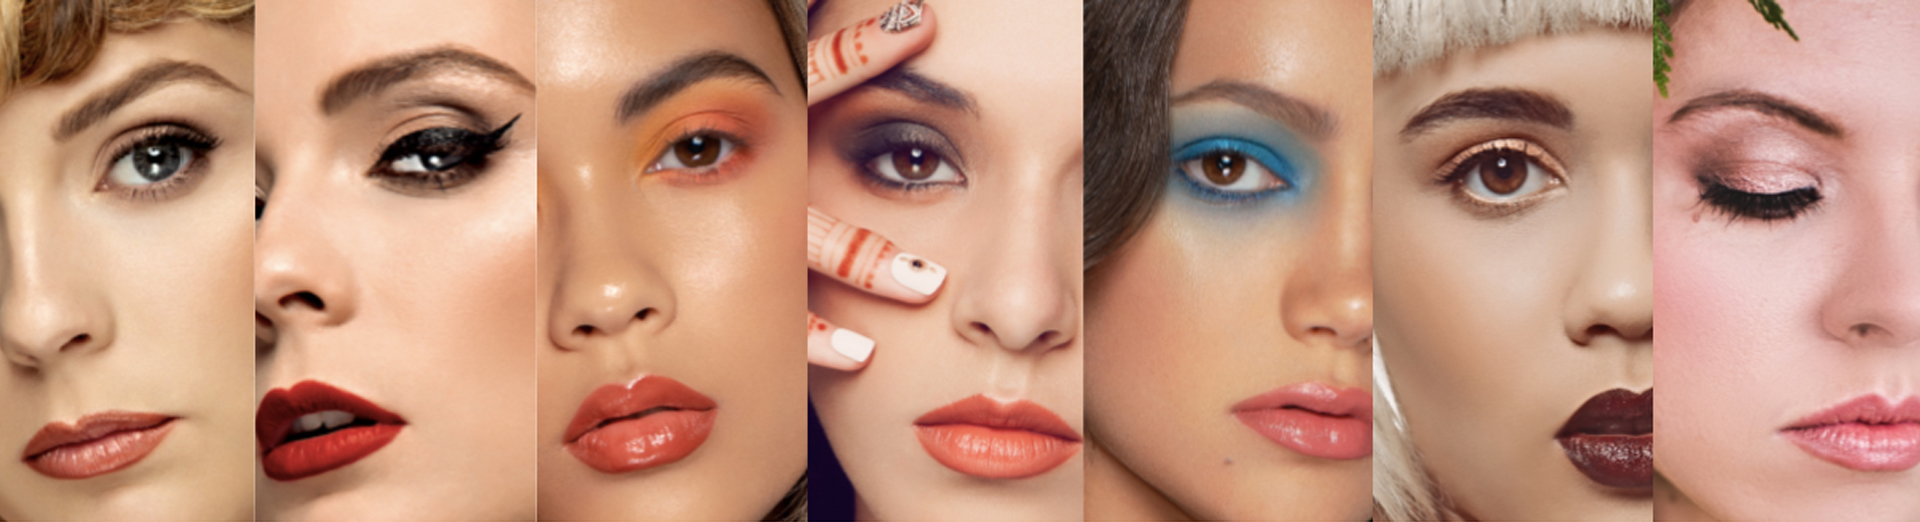 Various makeup looks by Top Notch Art of Makeup